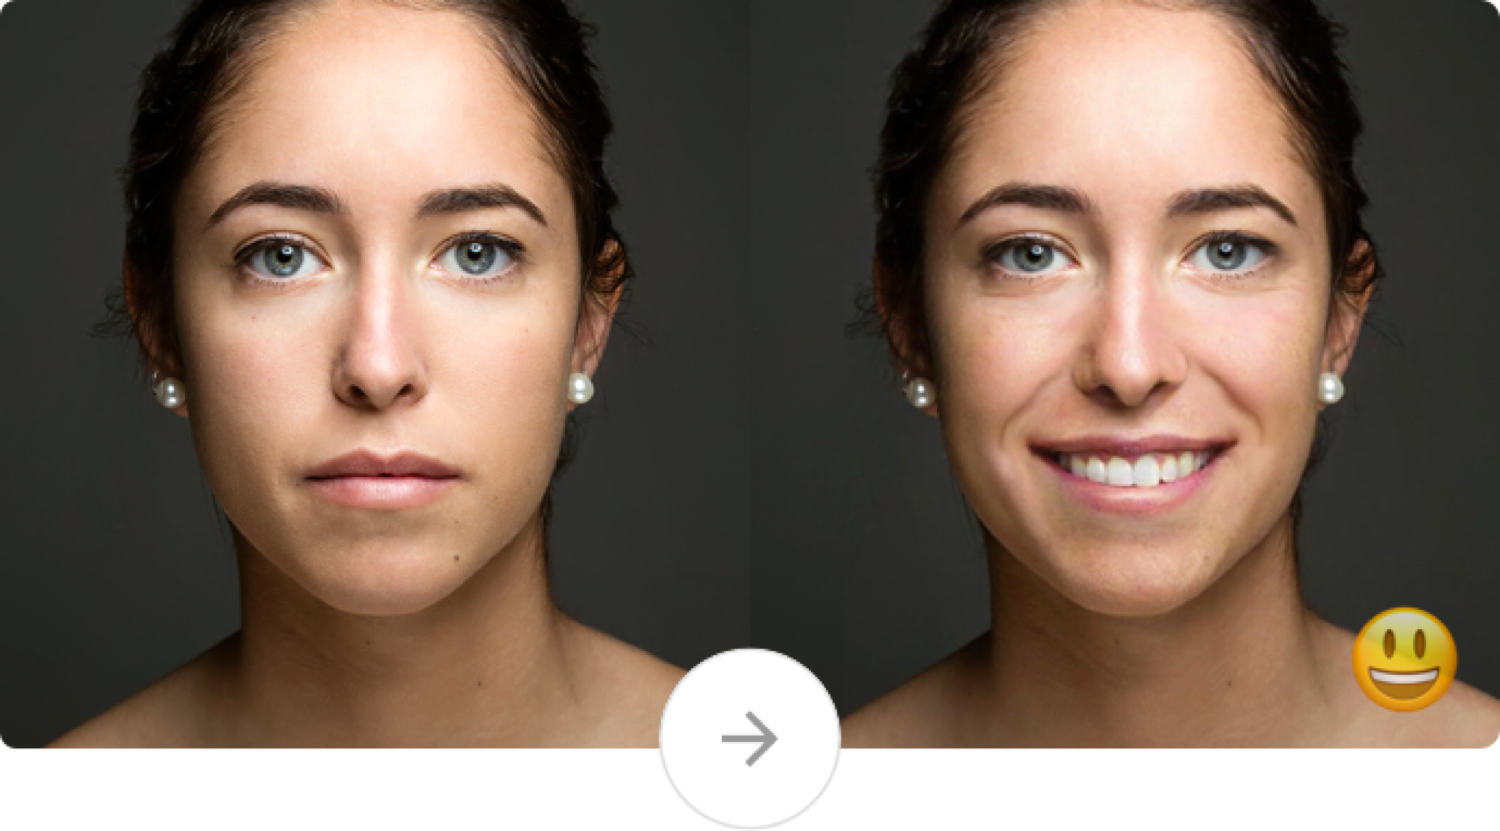 Сайт изменения лица. Трансформация лица. Фильтры которые меняют лицо. Изменения фото. Морщинистые лица в анфас.